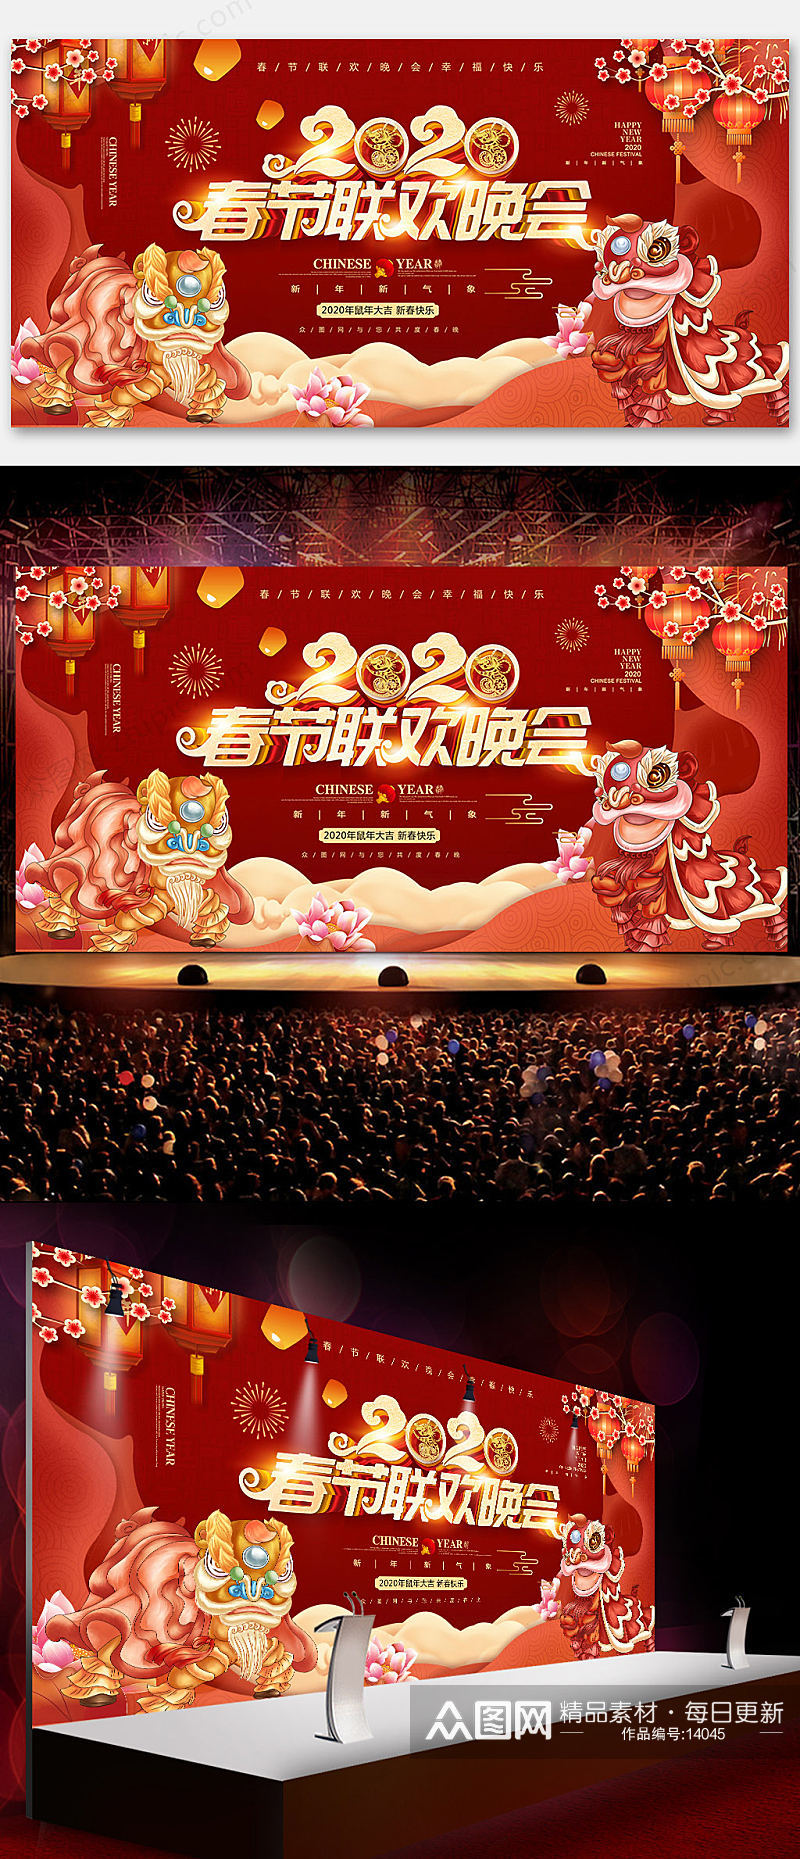 中式春节联欢晚会海报设计素材